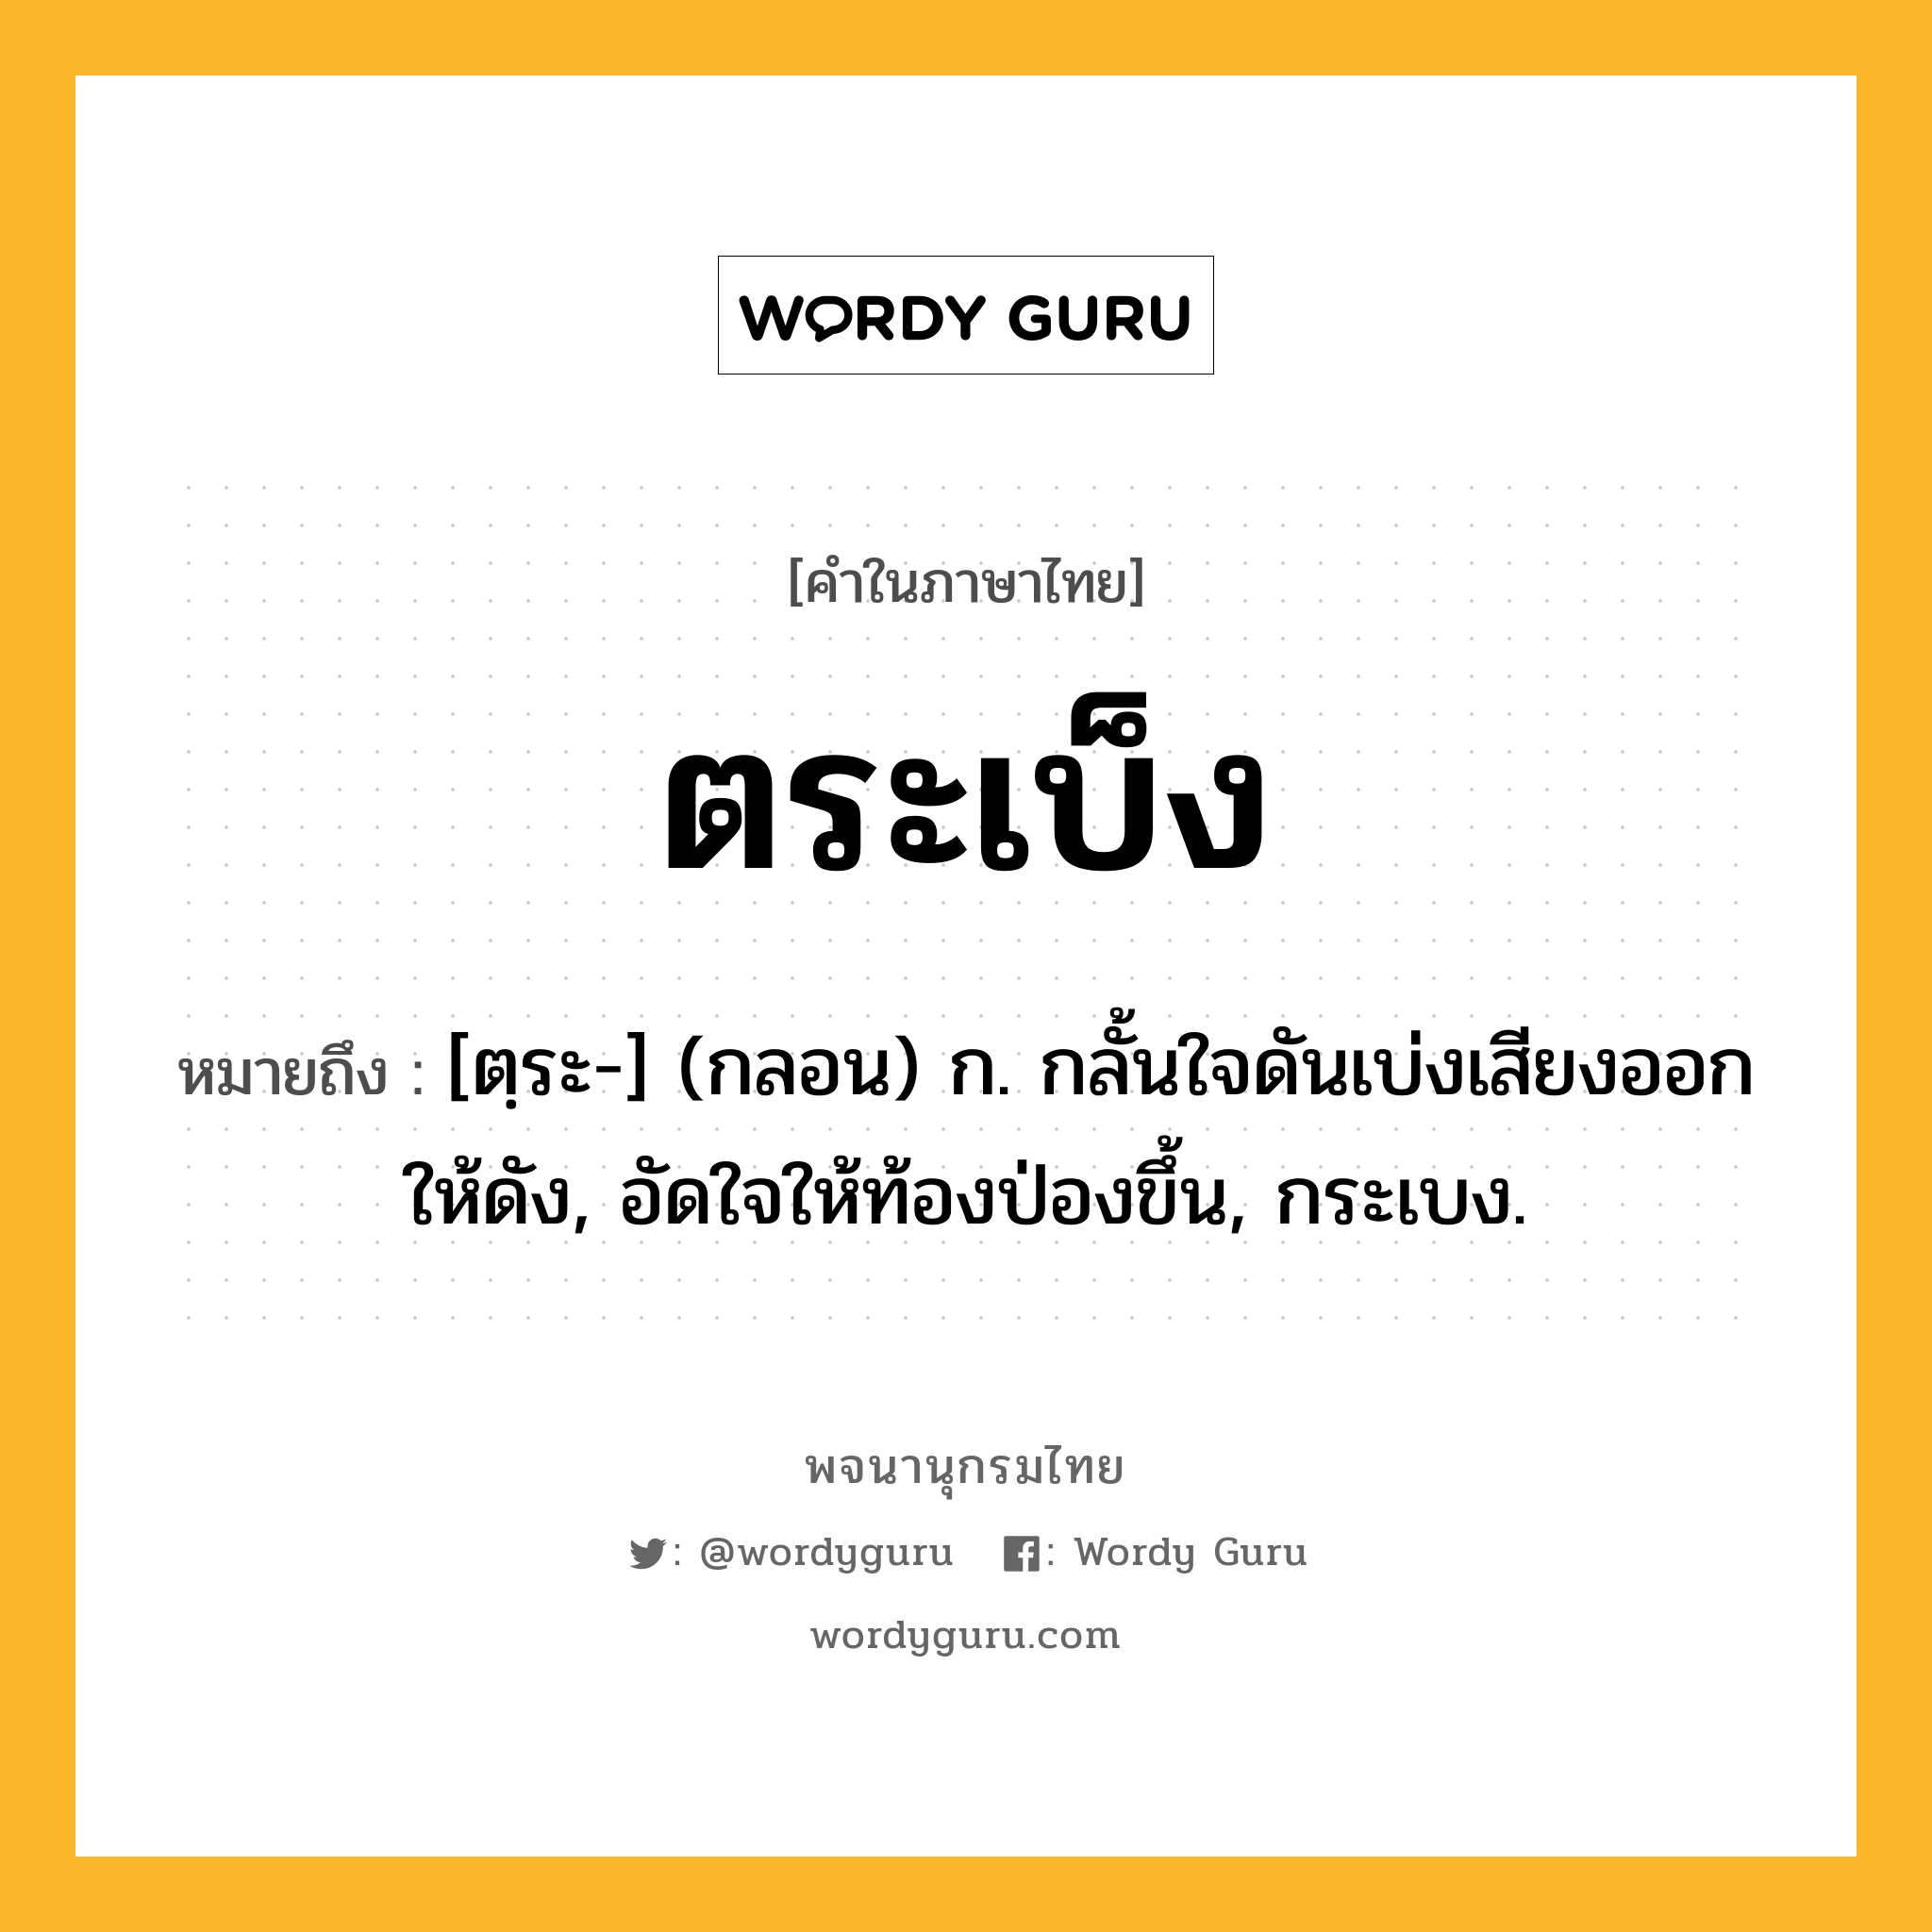 ตระเบ็ง ความหมาย หมายถึงอะไร?, คำในภาษาไทย ตระเบ็ง หมายถึง [ตฺระ-] (กลอน) ก. กลั้นใจดันเบ่งเสียงออกให้ดัง, อัดใจให้ท้องป่องขึ้น, กระเบง.